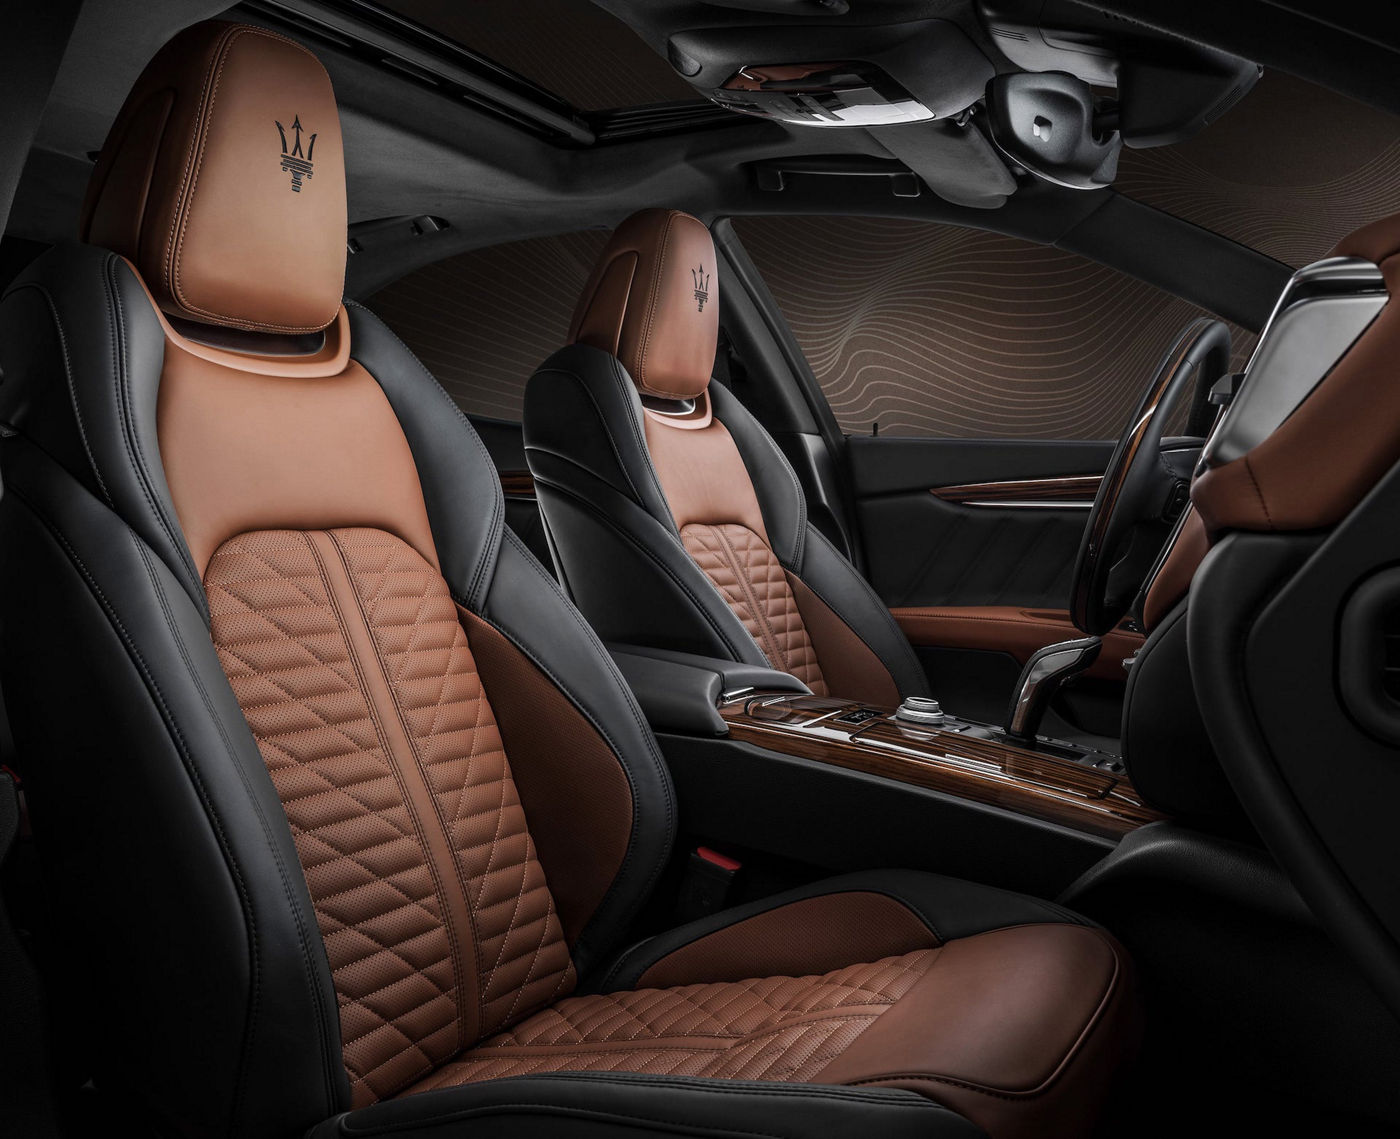 06-Maserati-Royale-Special-Series---Two-tone-Pieno-Fiore-leather-interior-min